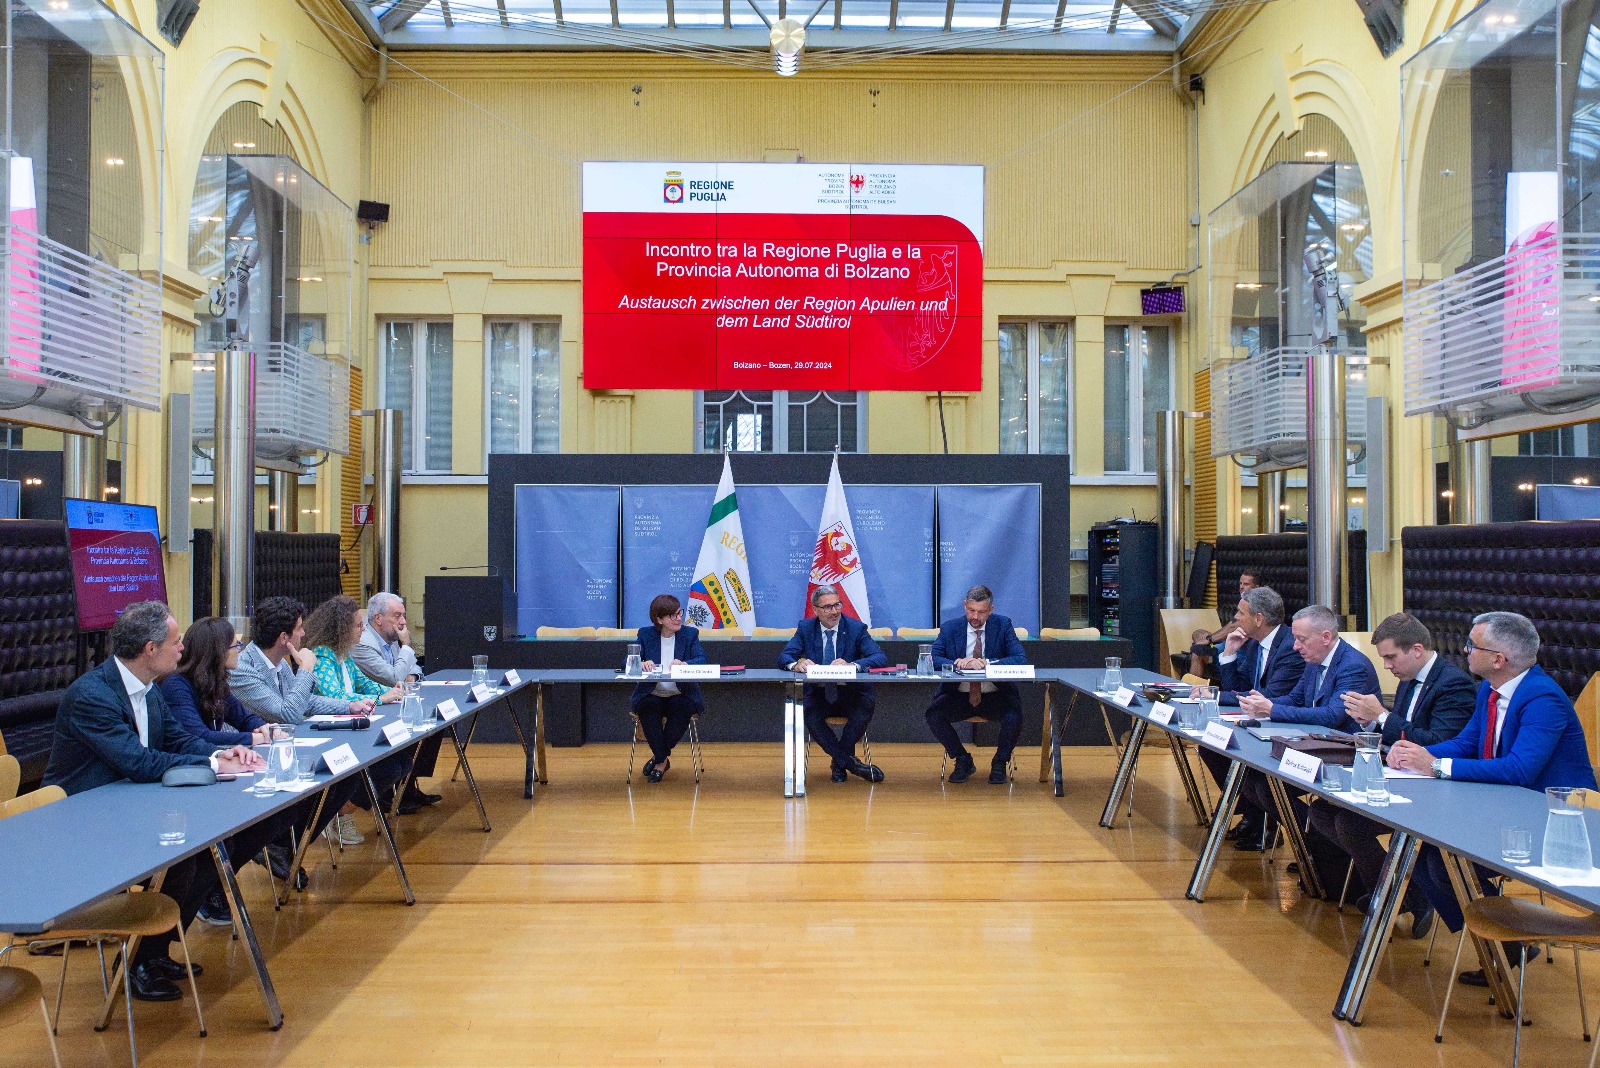 Galleria Puglia e Alto Adige firmano un accordo per la promozione dell’uso dell’idrogeno nel settore trasporti e della transizione ecologica - Diapositiva 8 di 9